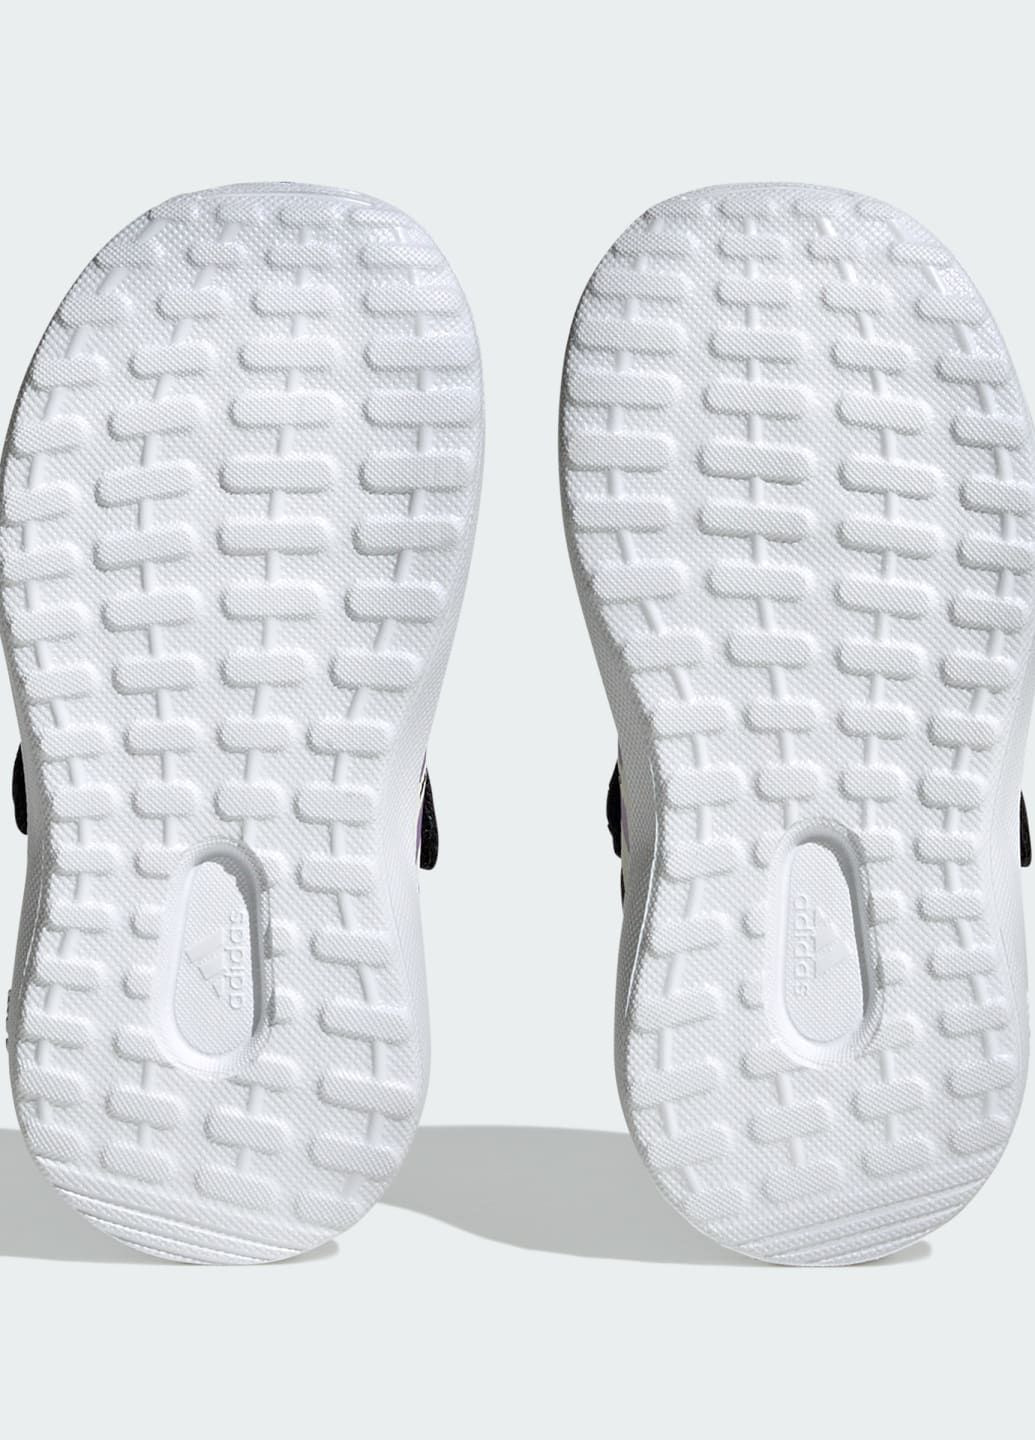 Чорні всесезонні кросівки fortarun 2.0 adidas